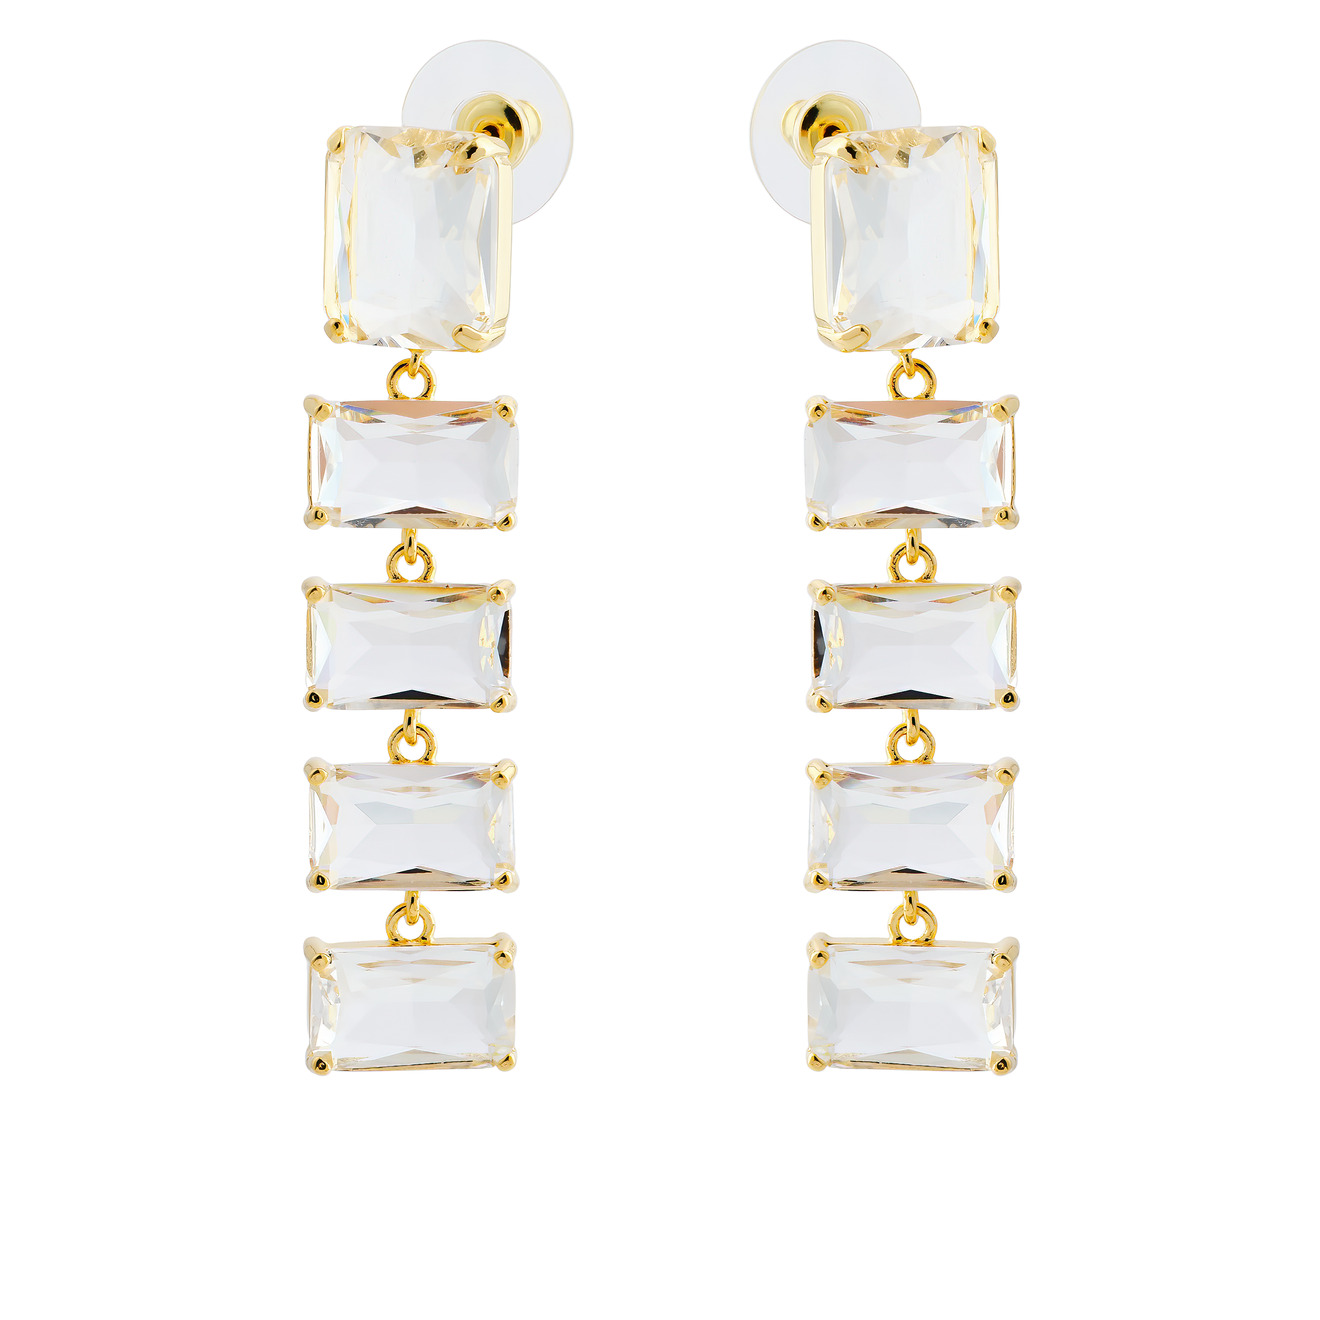 Herald Percy Золотистые длинные серьги с крупными кристаллами herald percy двойные золотистые серьги с белыми кристаллами